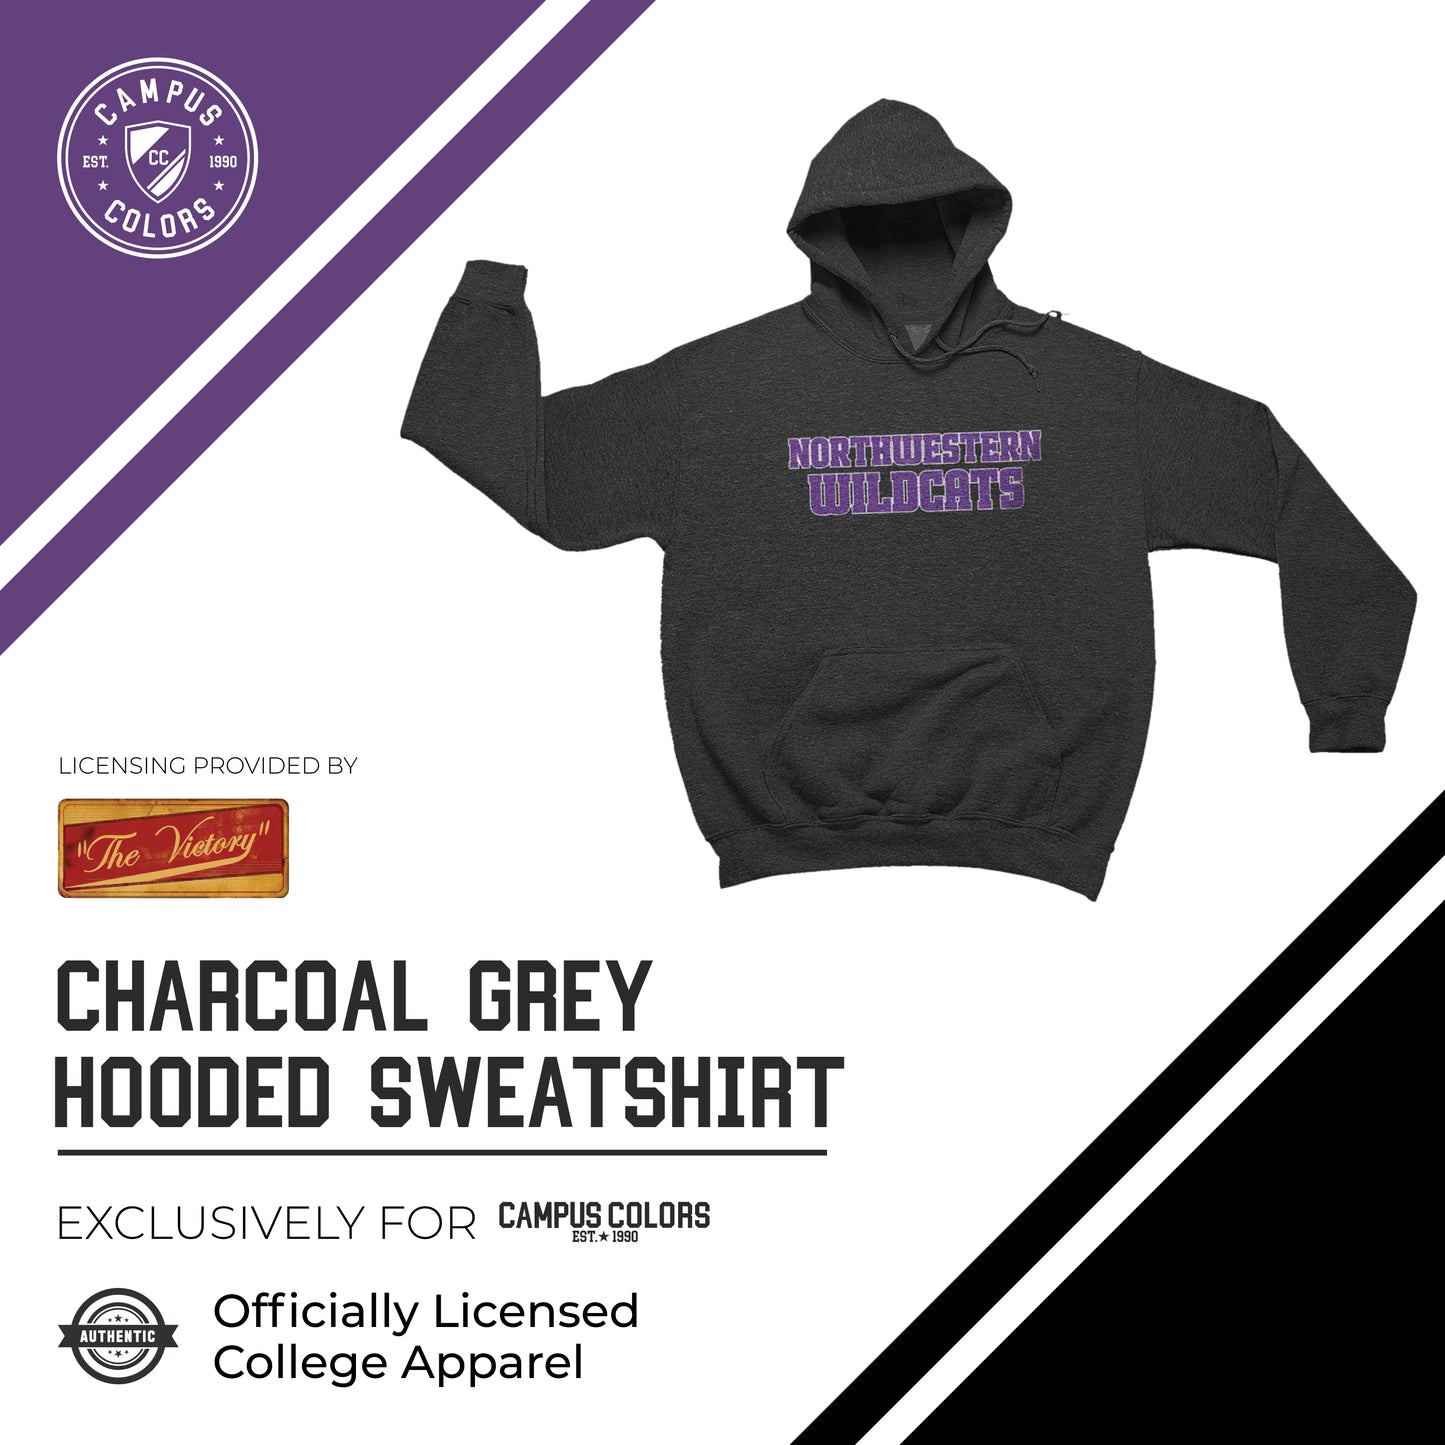 Northwestern Wildcats NCAA Adult Cotton Blend Charcoal Hooded Sweatshirt - Charcoal